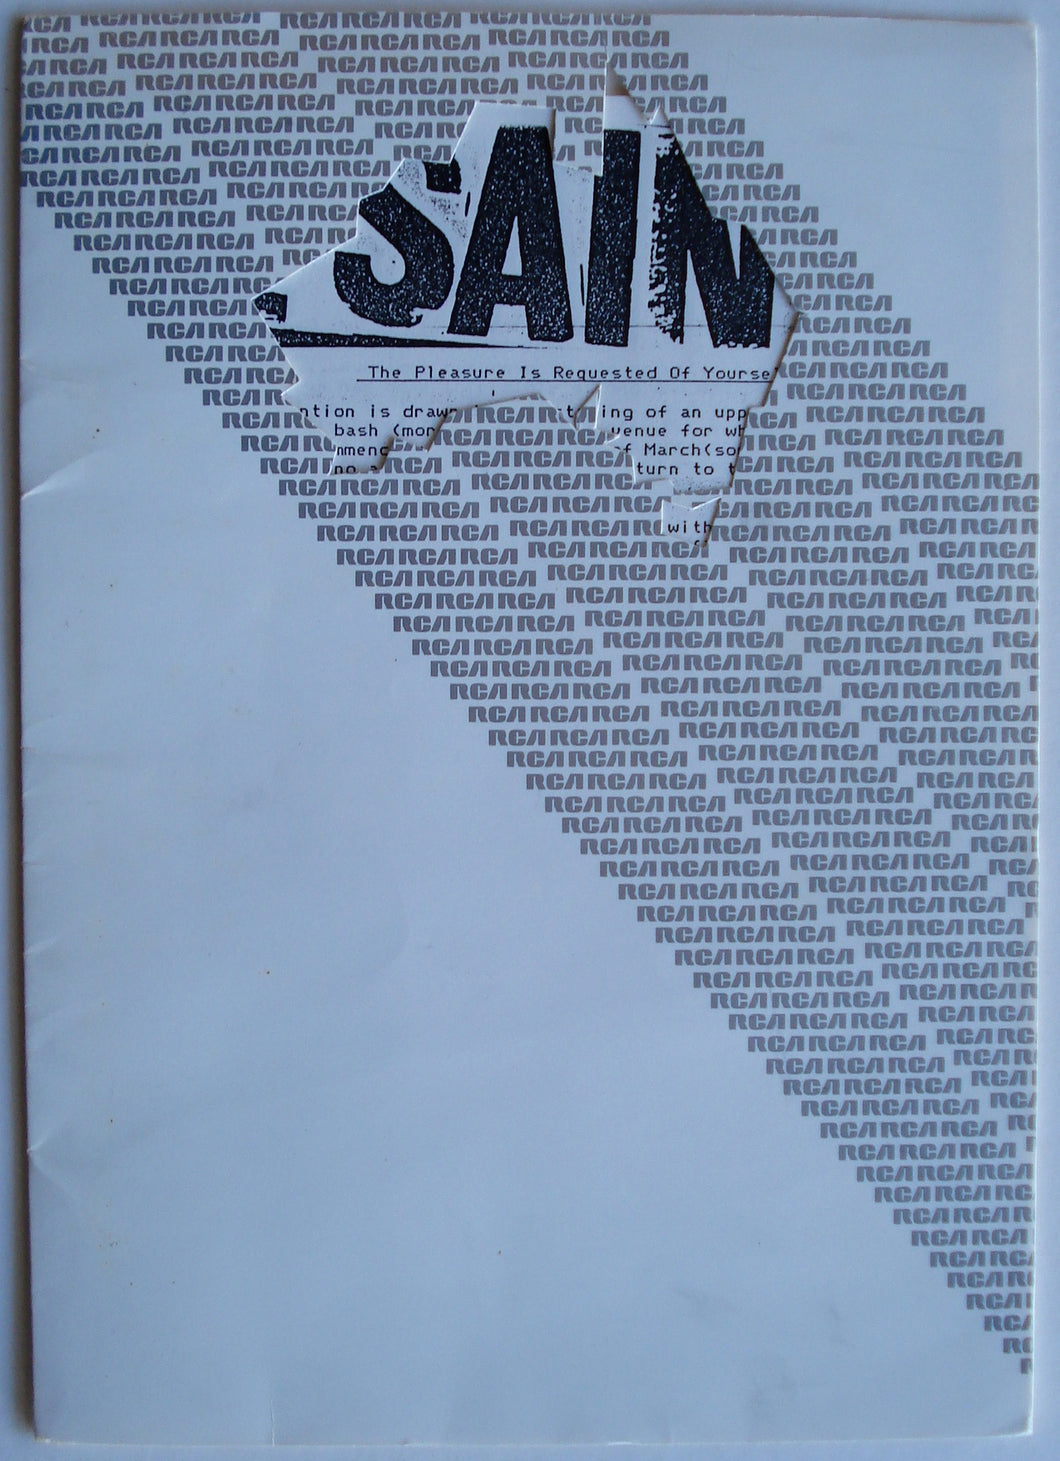 Saints - Press Kit